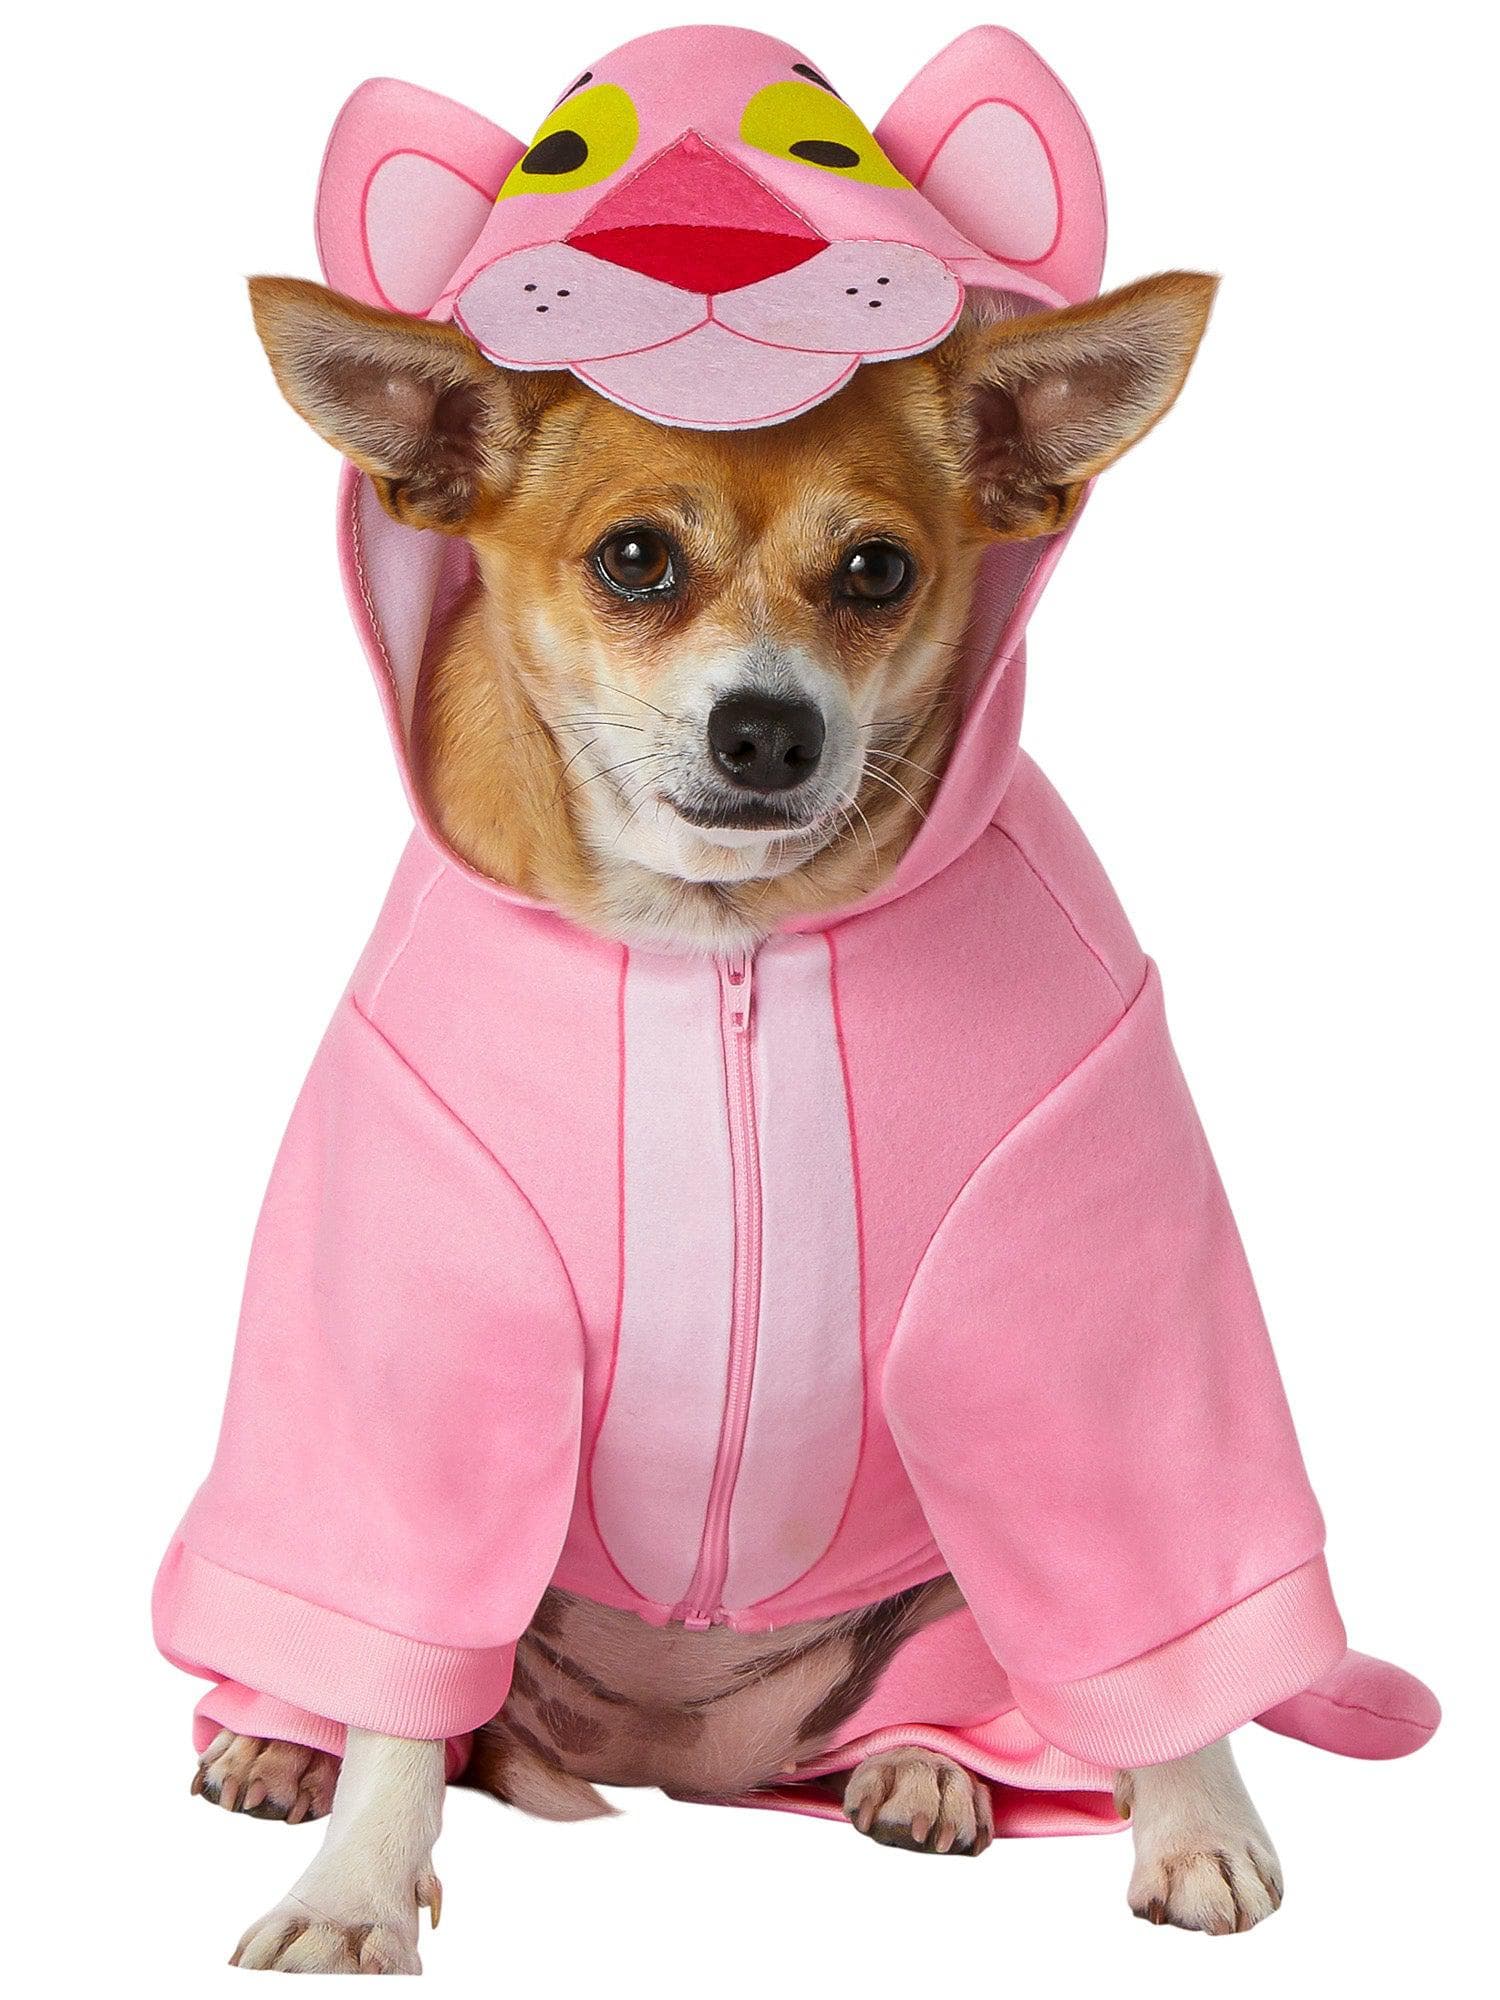 Pink Panther Pet Costume - costumes.com